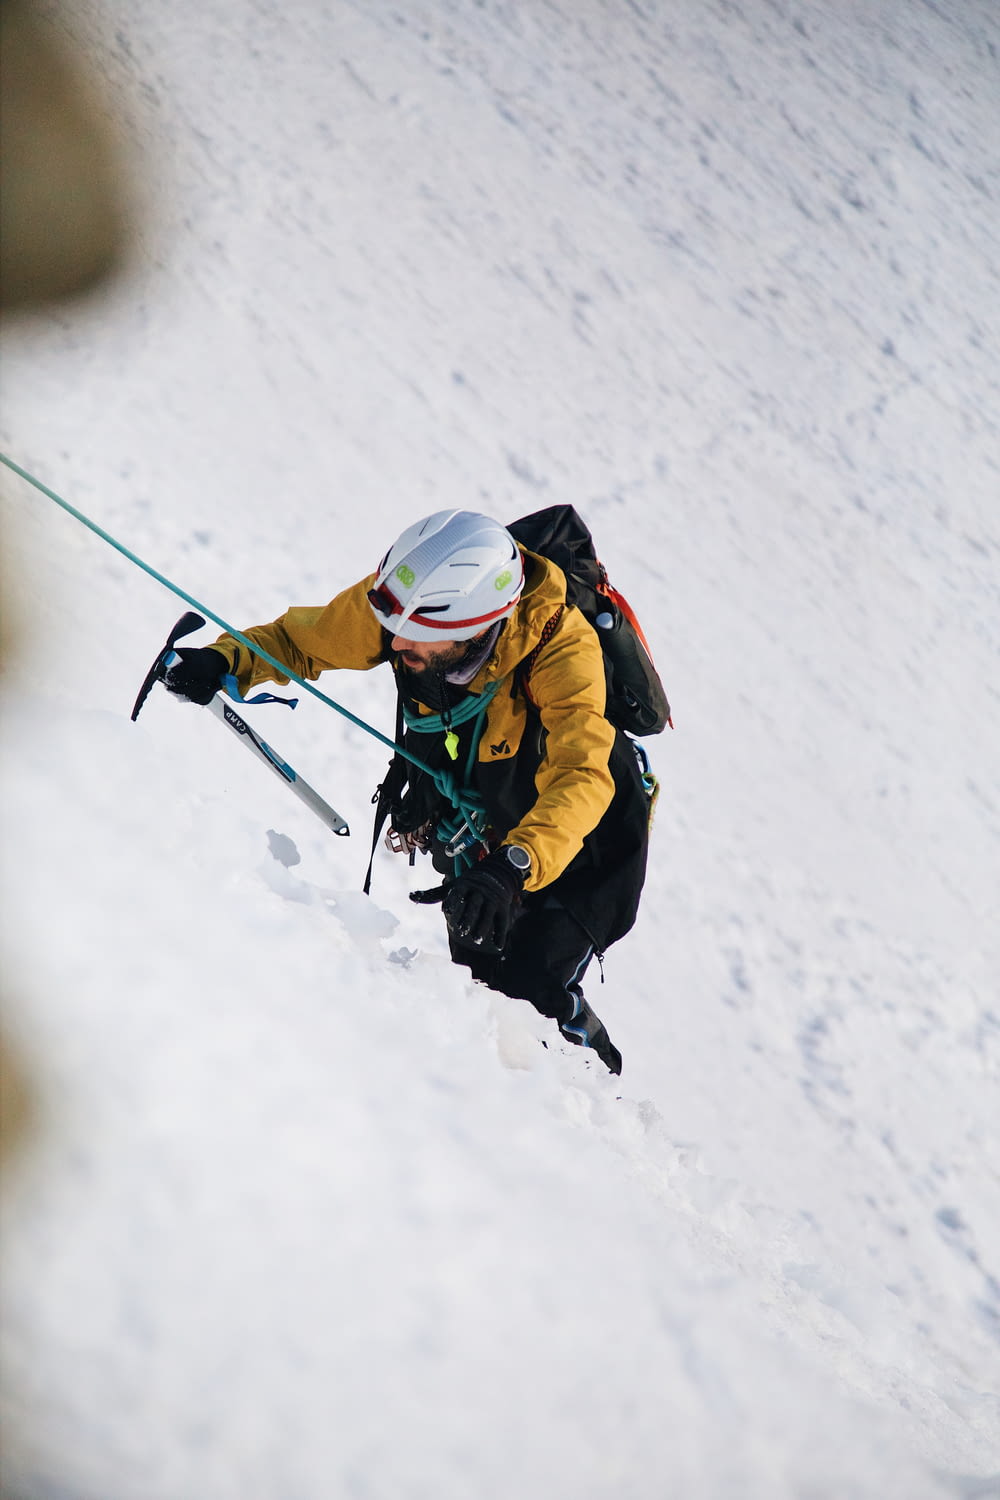 une personne sur des skis descendant une colline enneigée